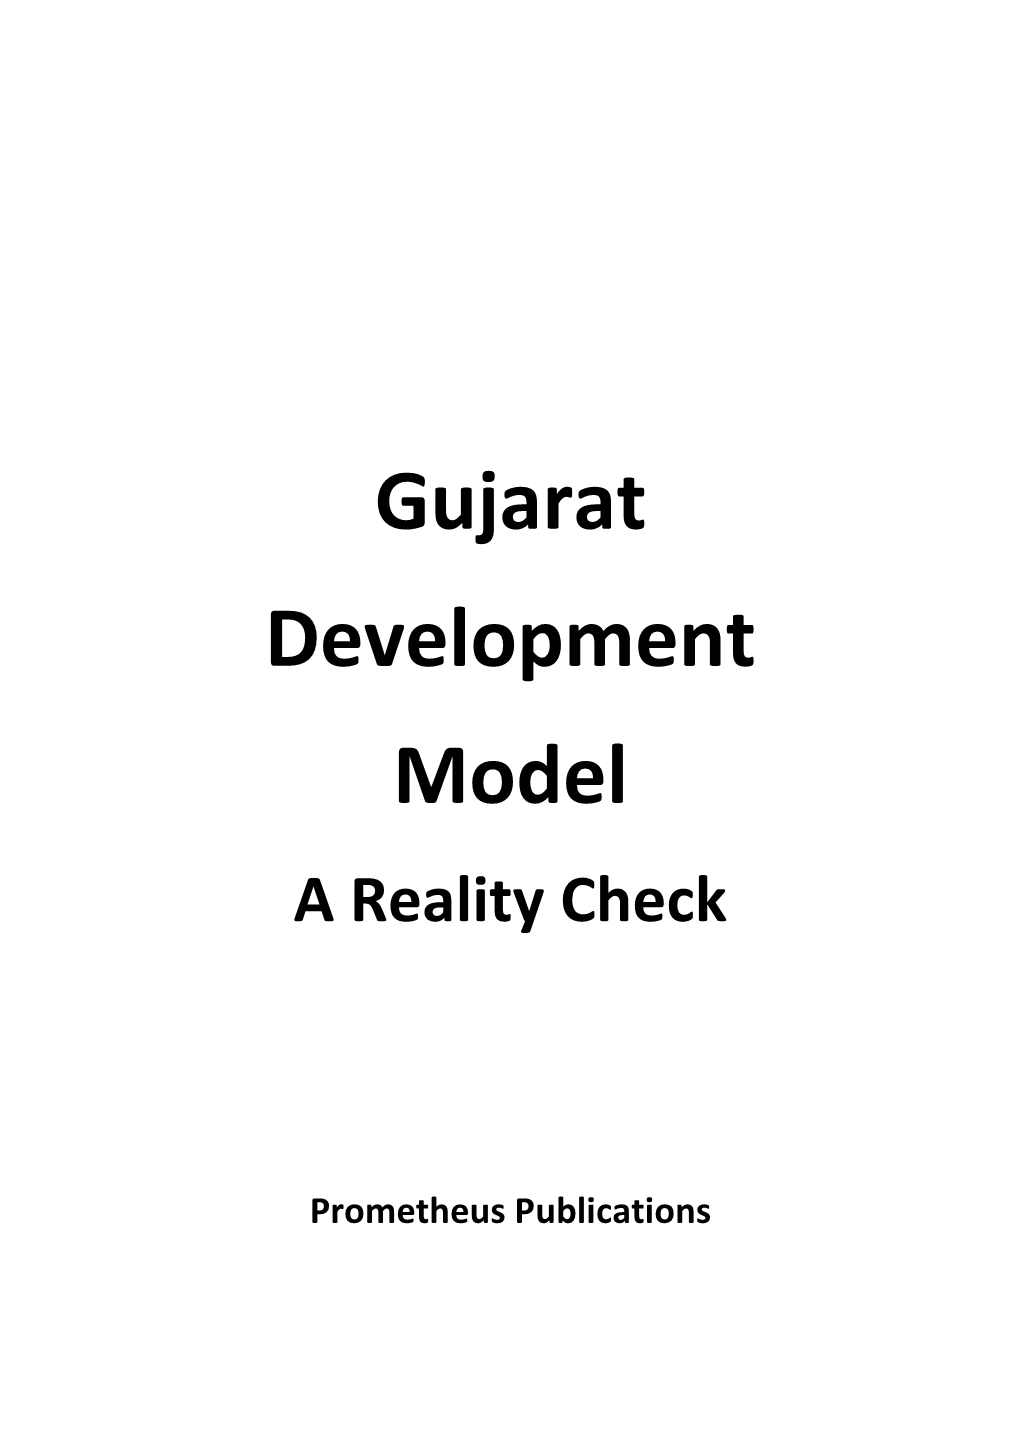 Gujarat Development Model a Reality Check